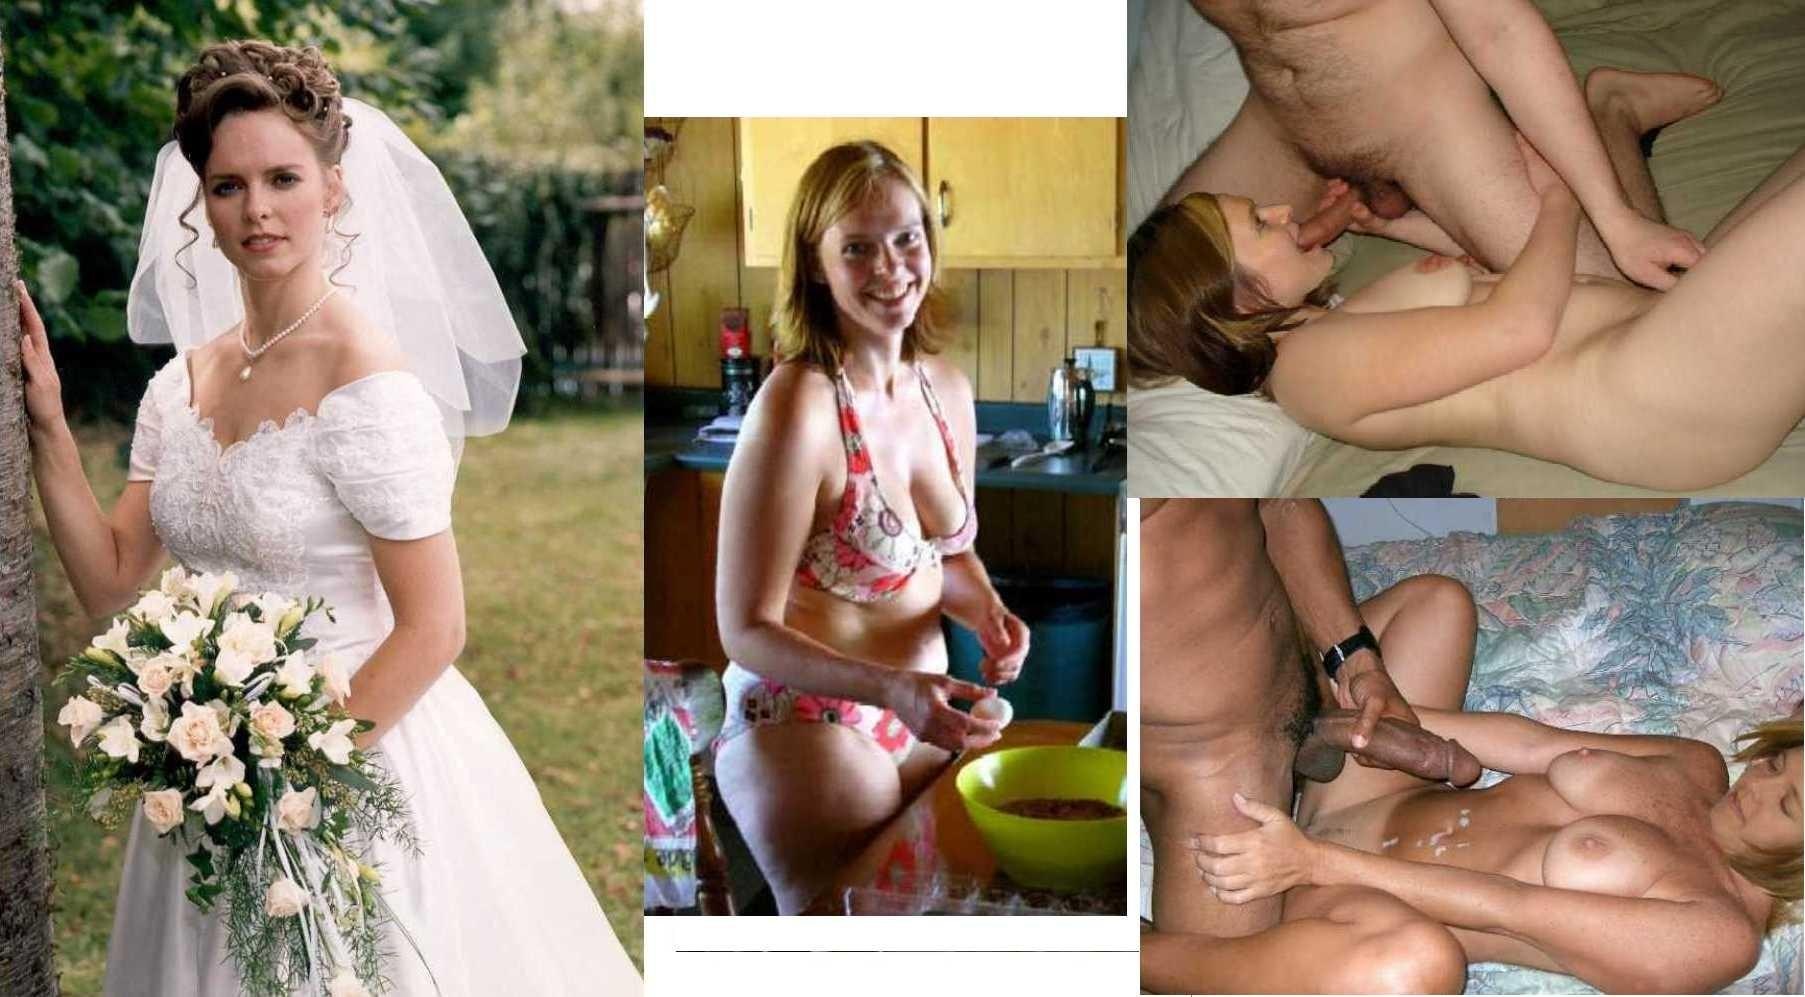 Bride Sex Porno - Real Sex with the Bride at the Wedding (55 photos) - porn photo